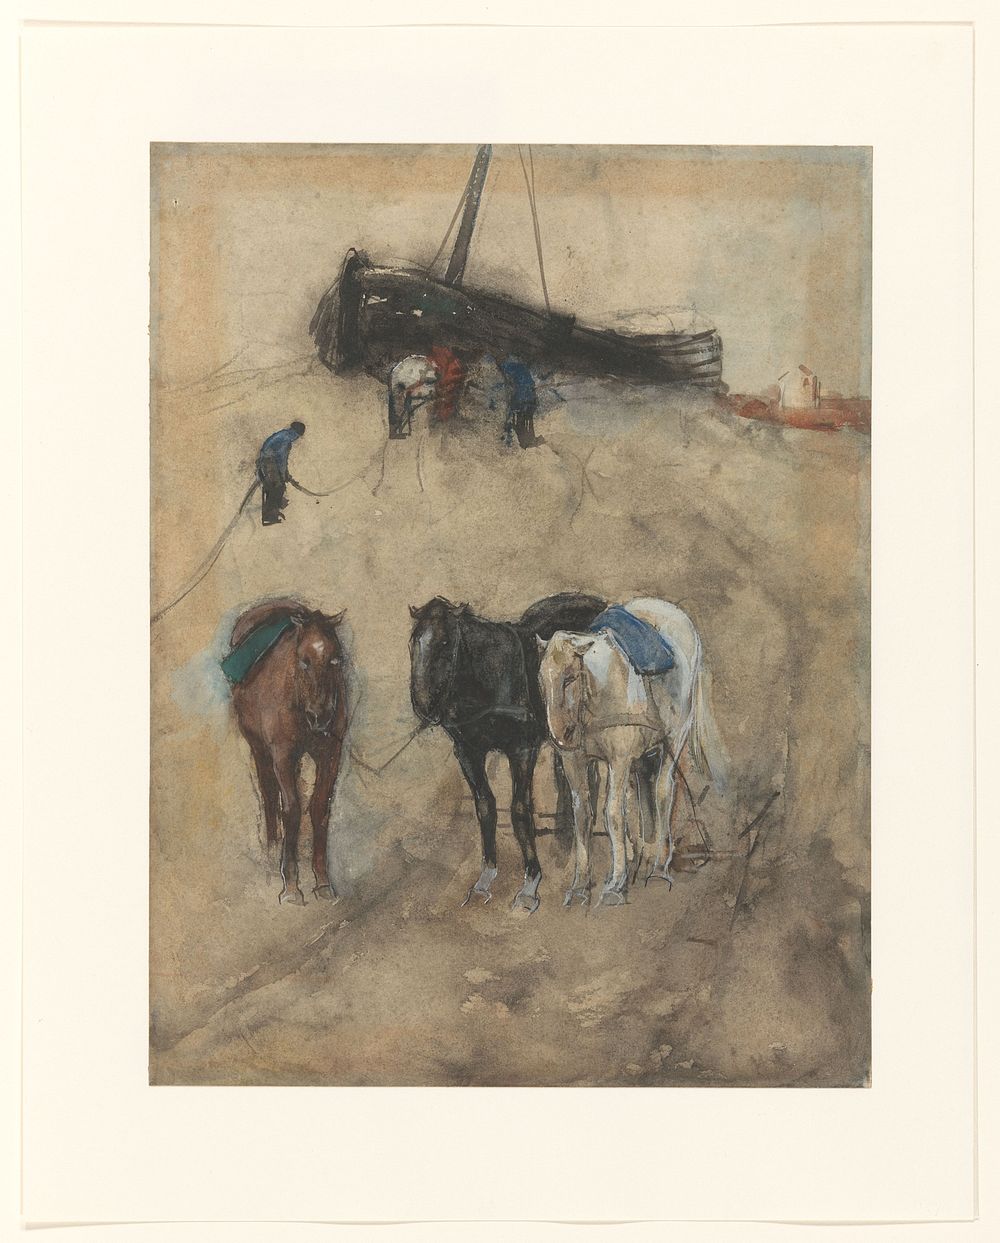 Paarden op het strand, op de achtergrond een schuit en vissers (c. 1867 - c. 1923) by George Hendrik Breitner and Willem de…